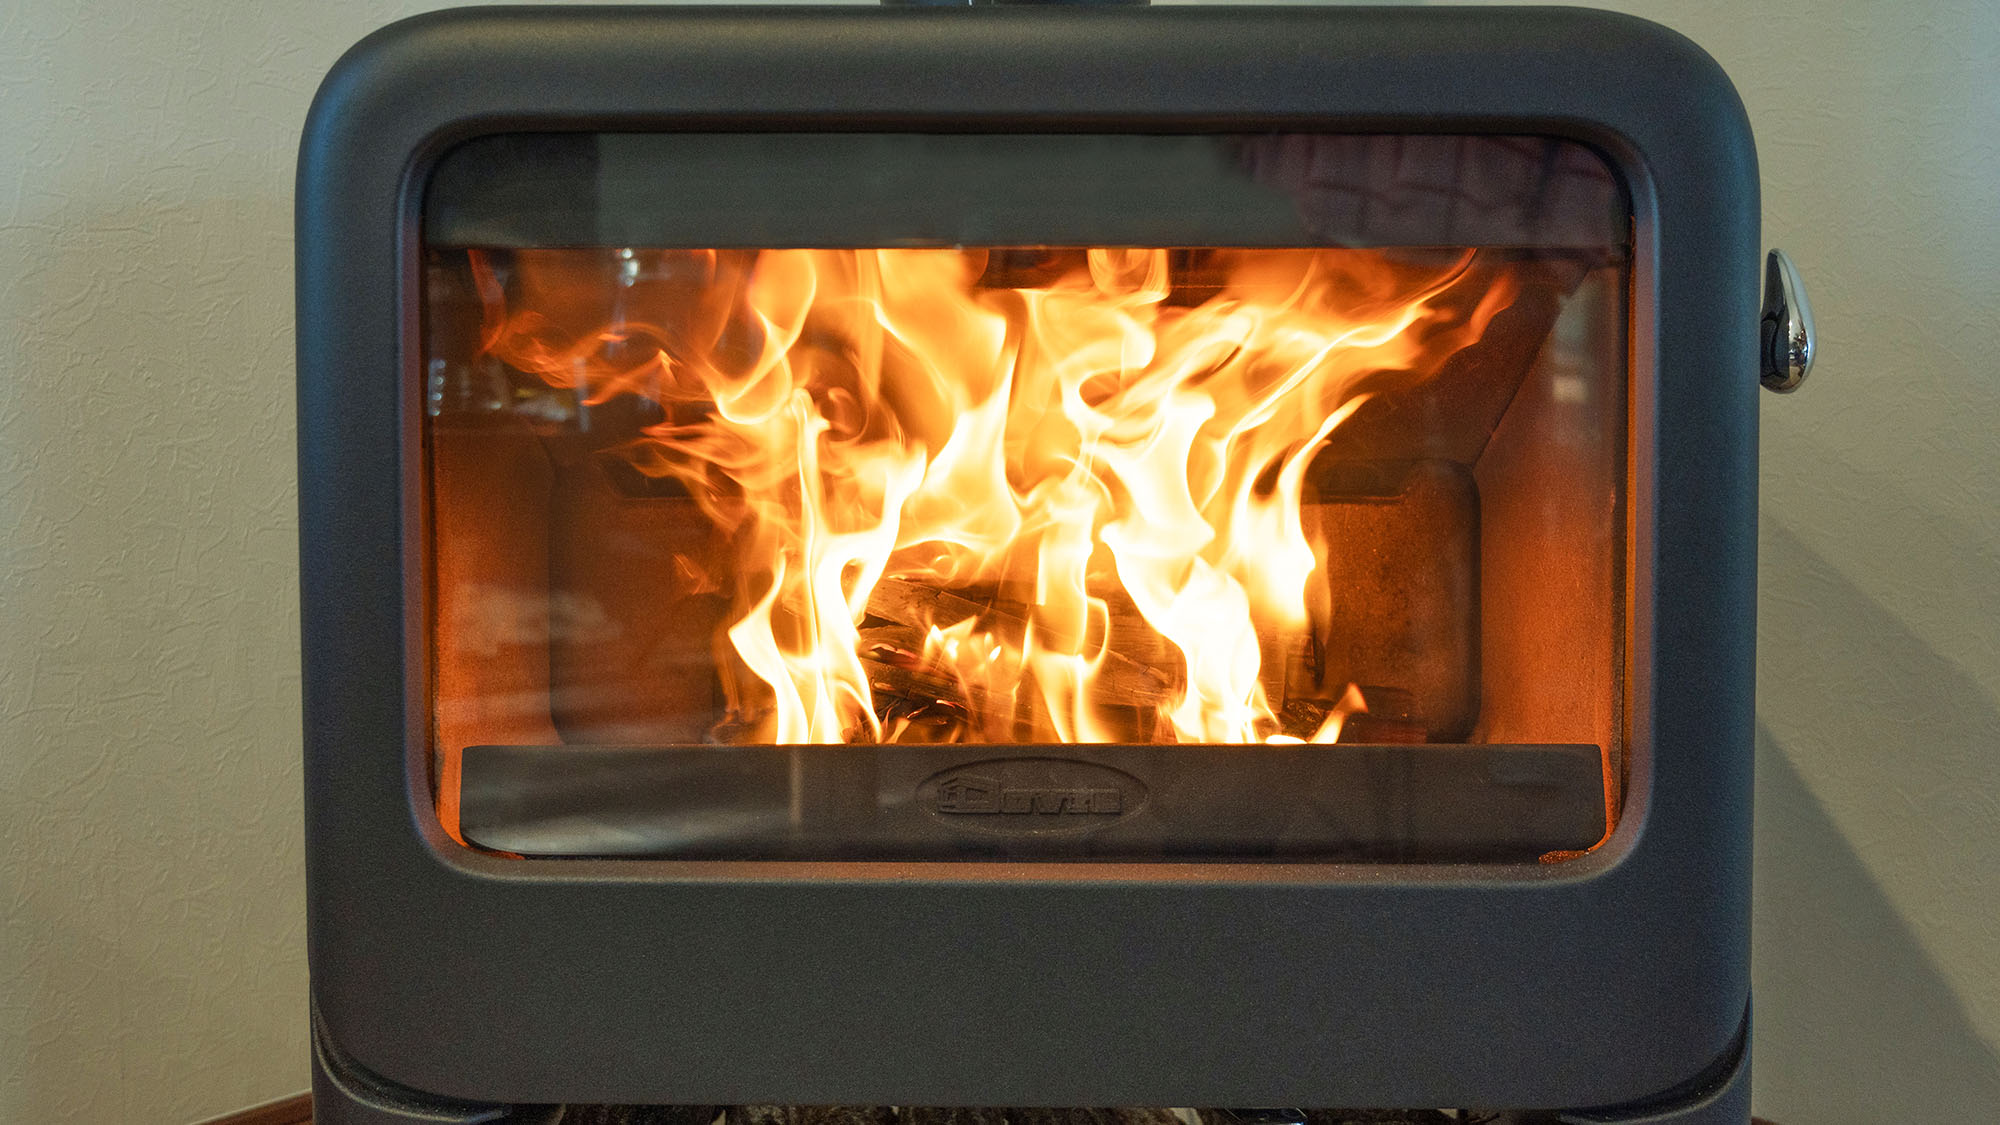 ・【暖炉】炎の光と音でリラックスできる薪ストーブ